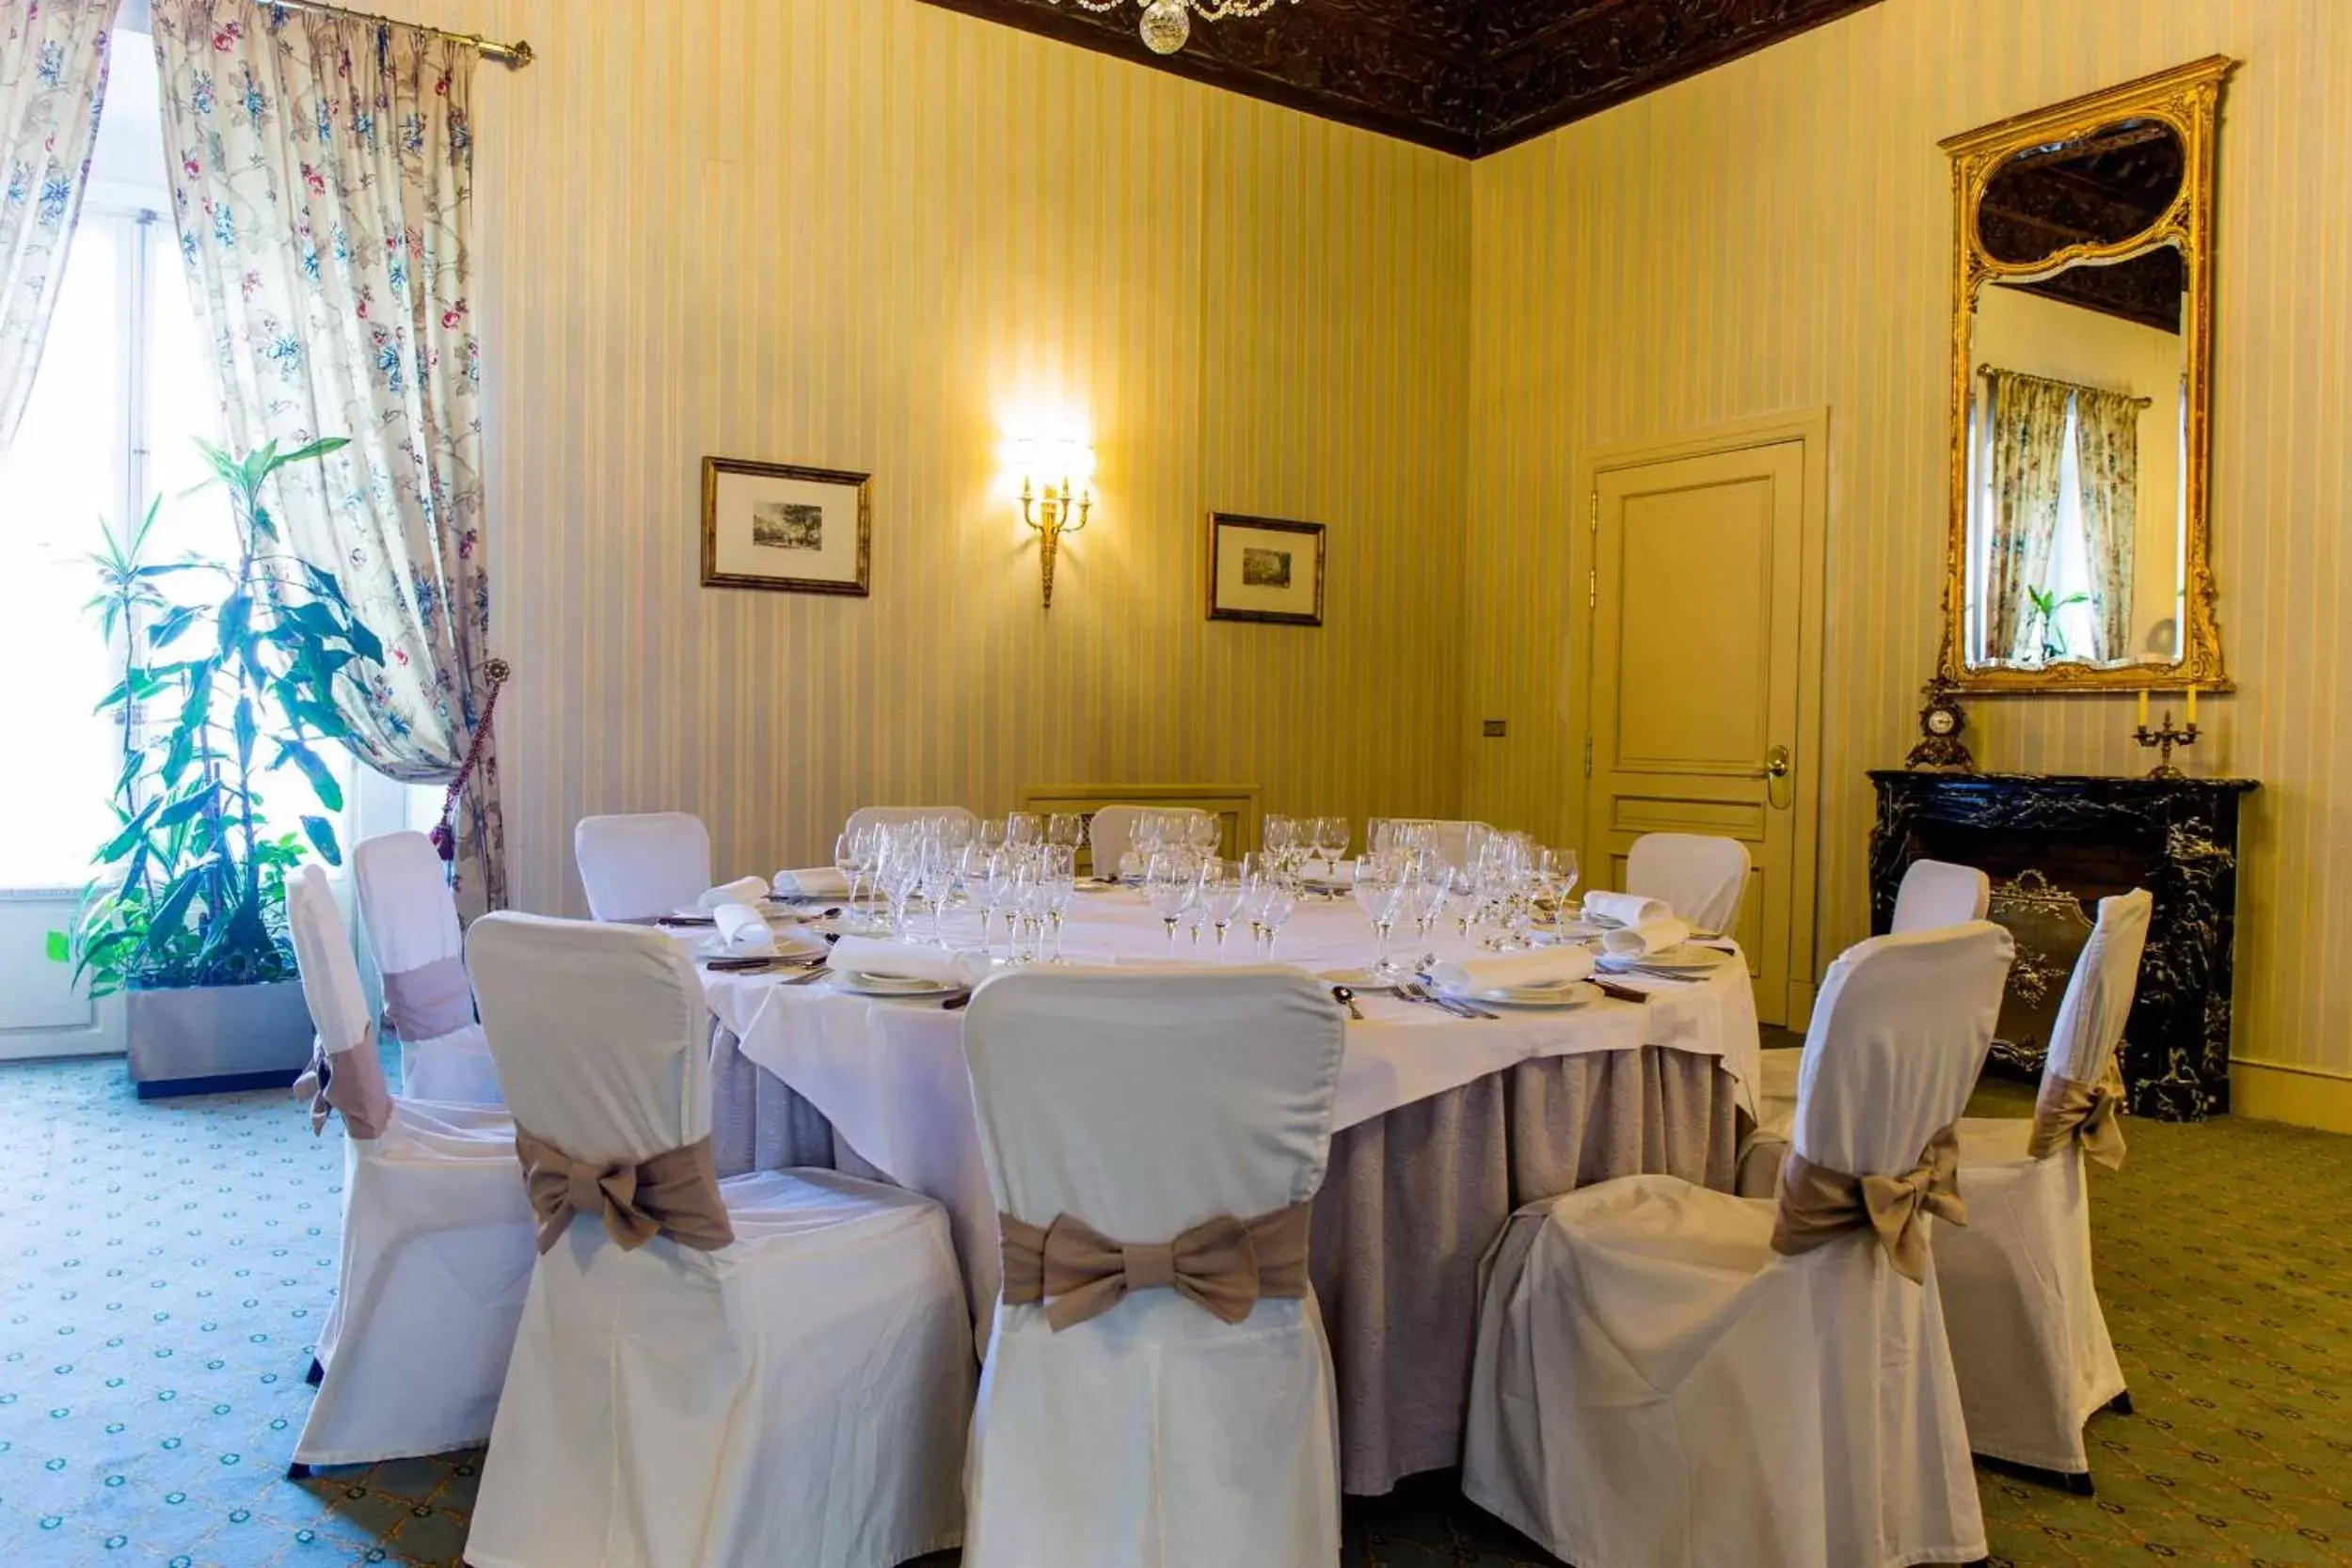 Restaurant/places to eat, Banquet Facilities in Palacio de los Velada